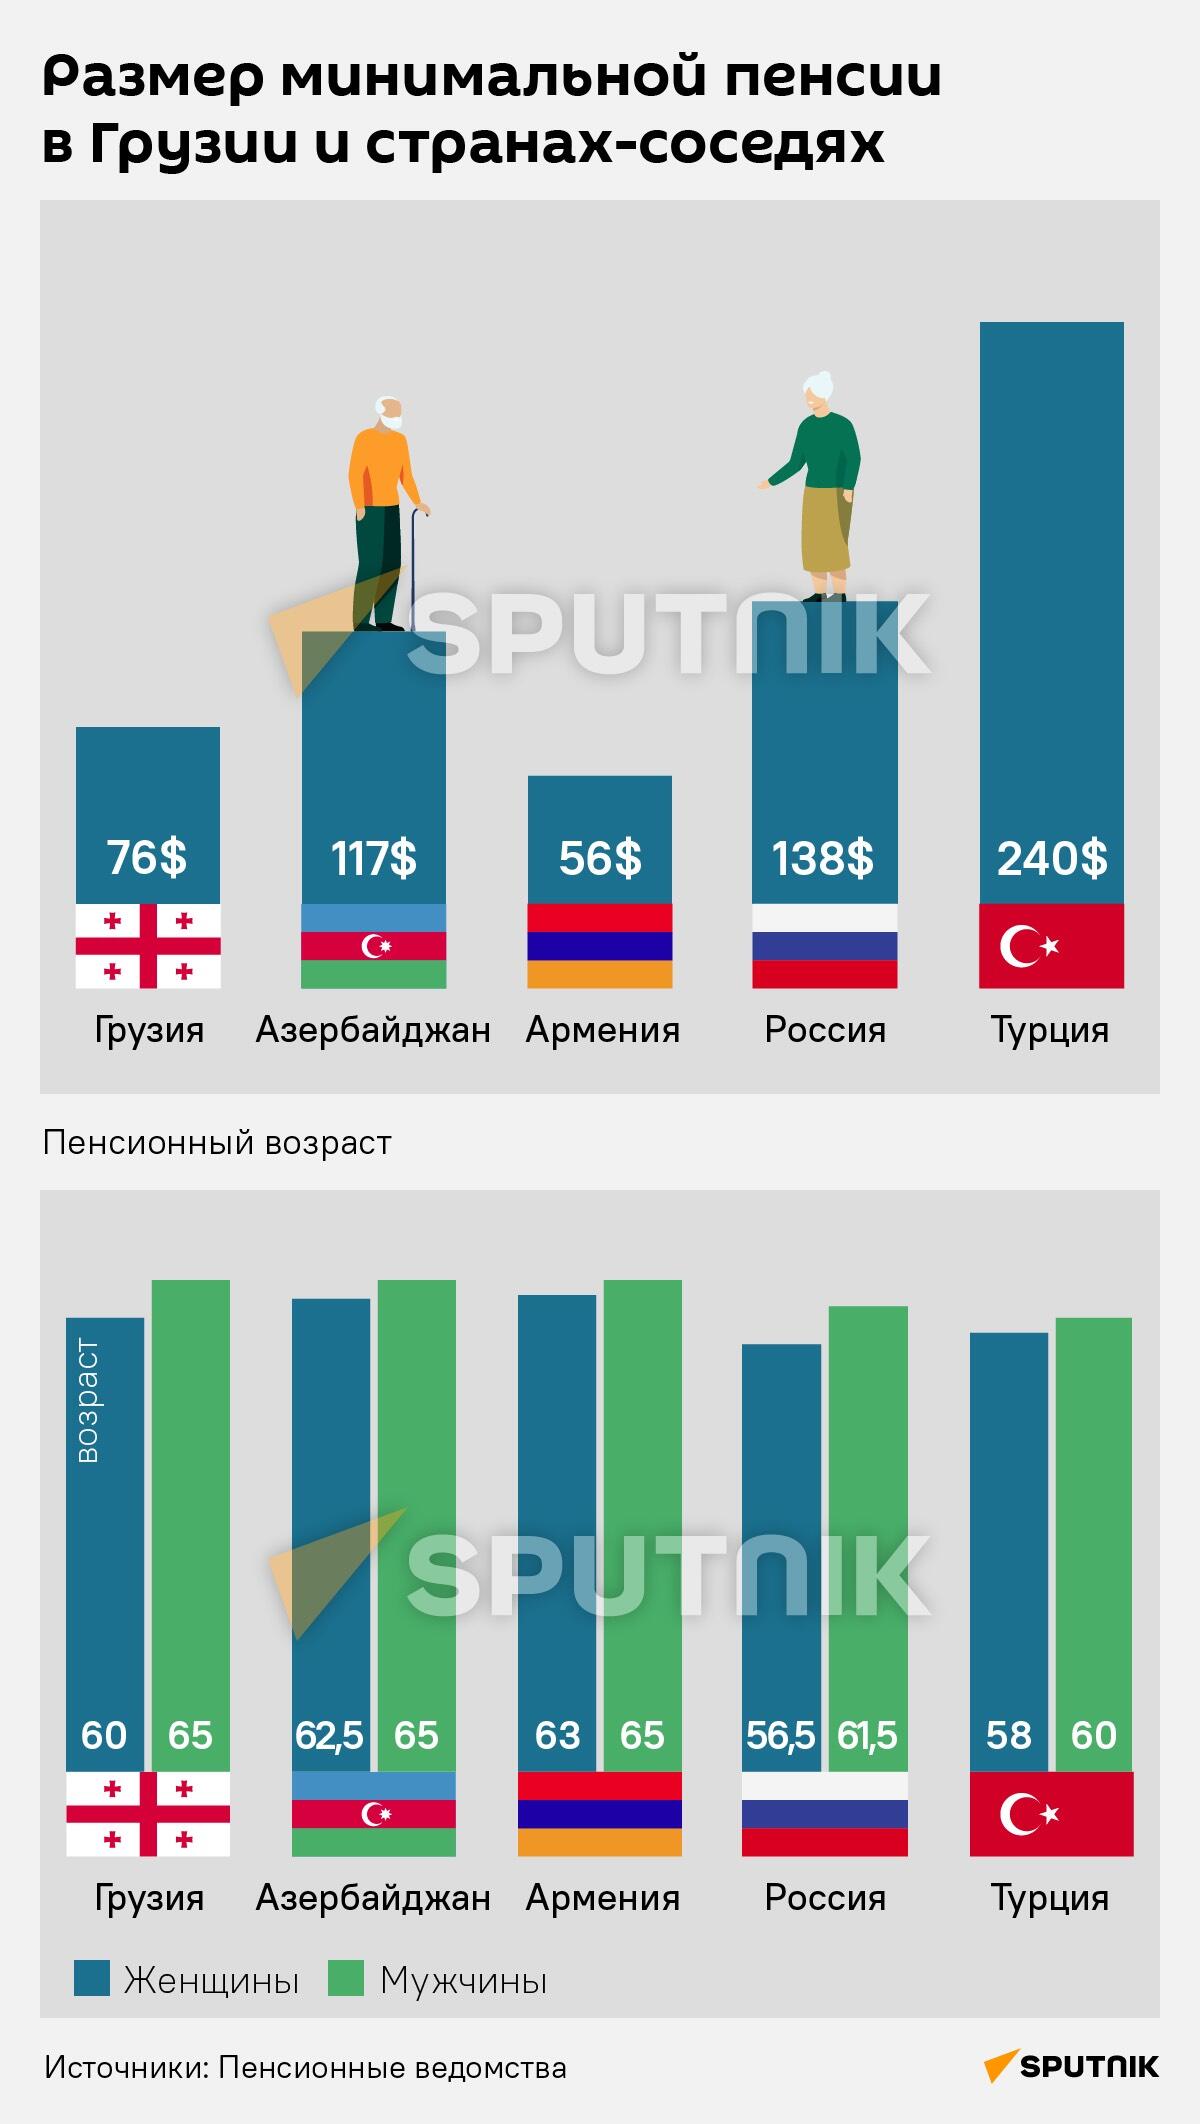 Минимальная пенсия в Грузии и странах-соседях - Sputnik Грузия